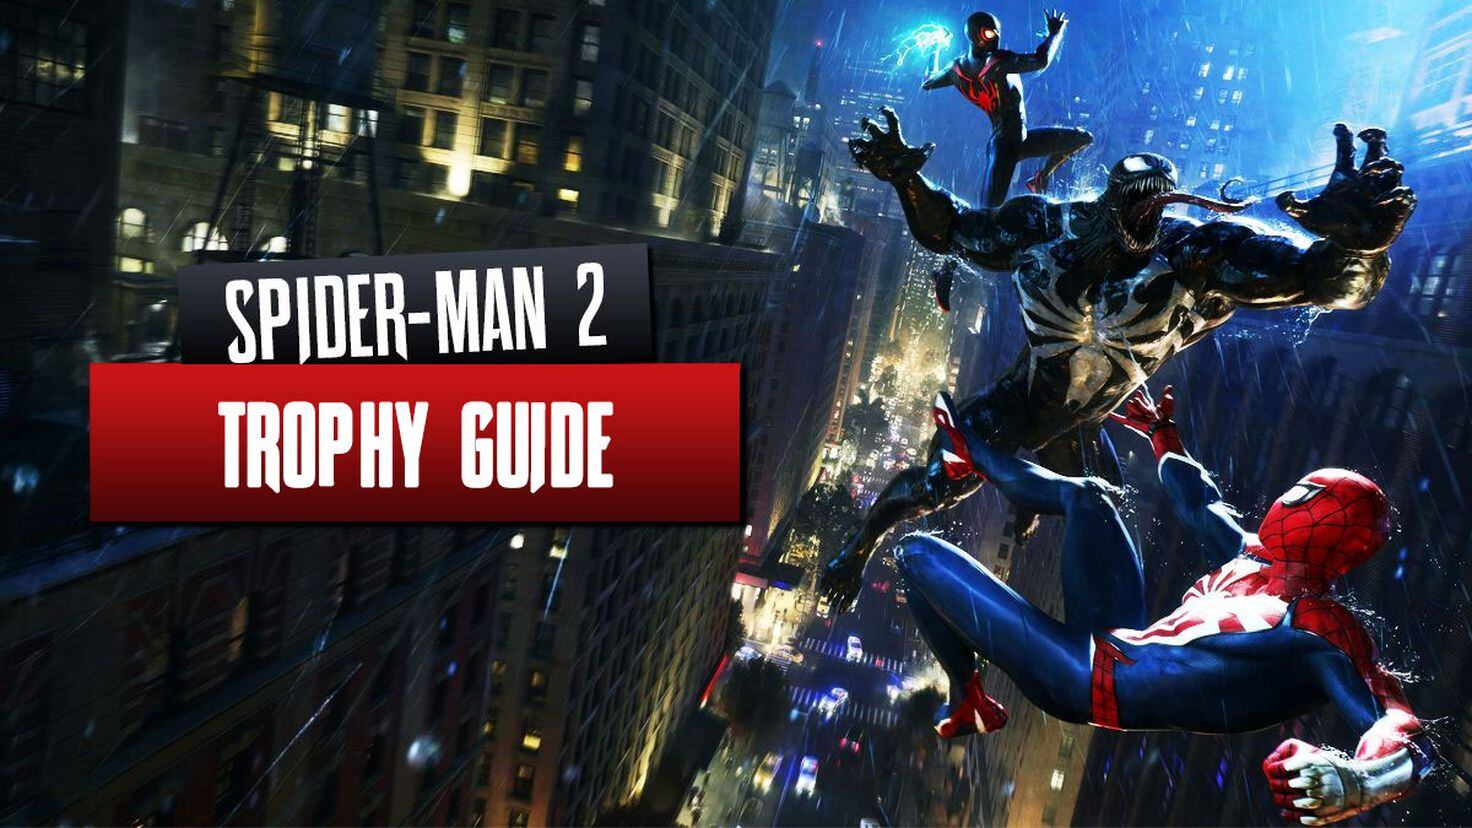 Spider-Man 2 Soar Trophy Guide 